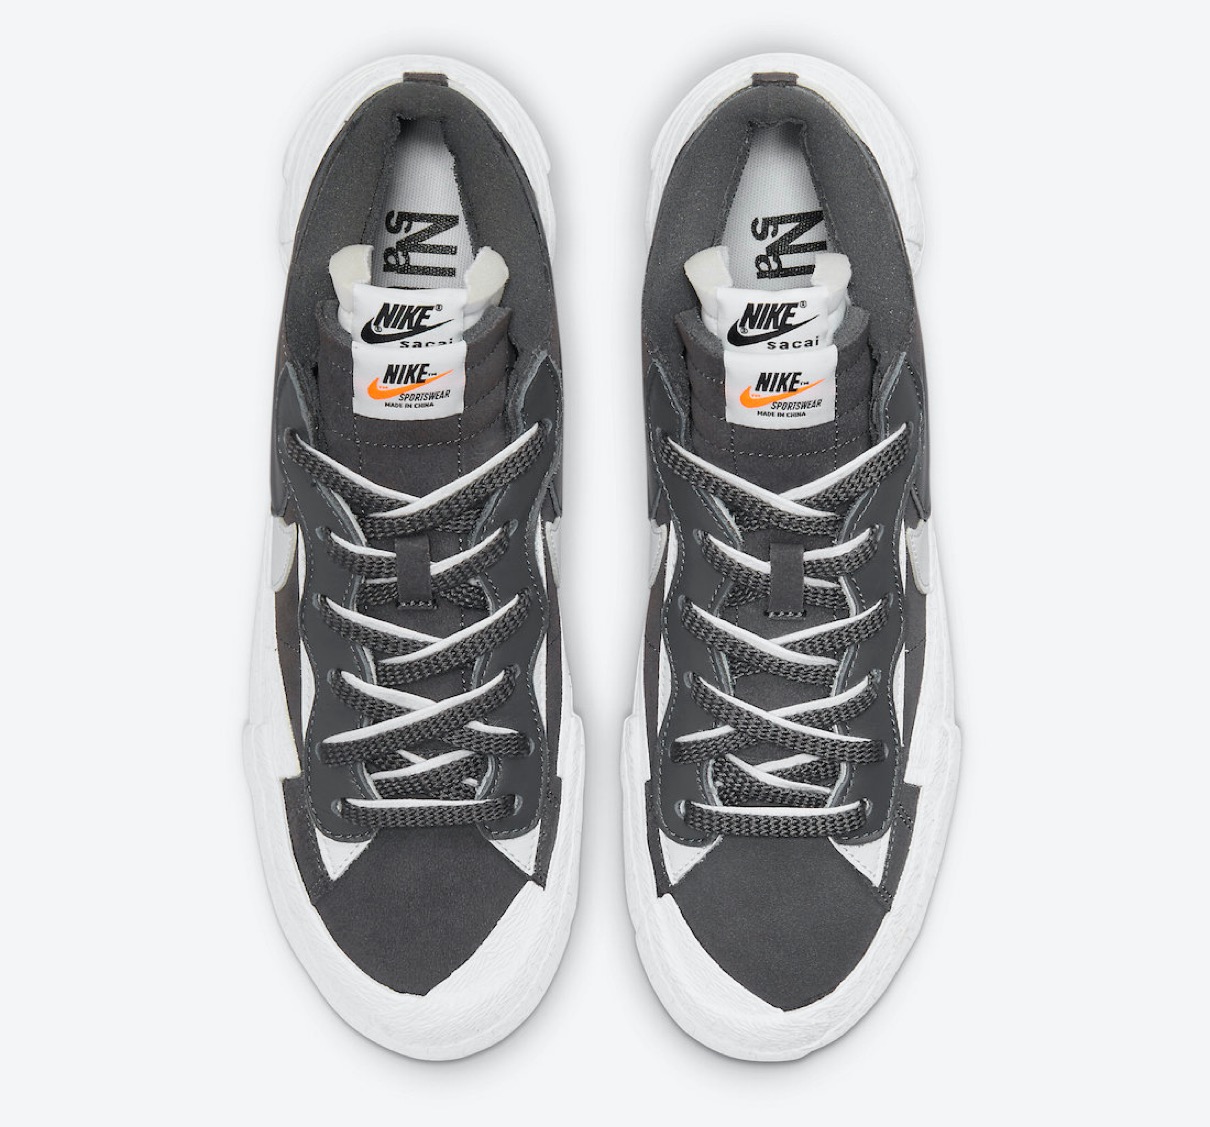 Sacai × Nike】Blazer Low “Iron Grey” & “Light British Tan”が国内7 